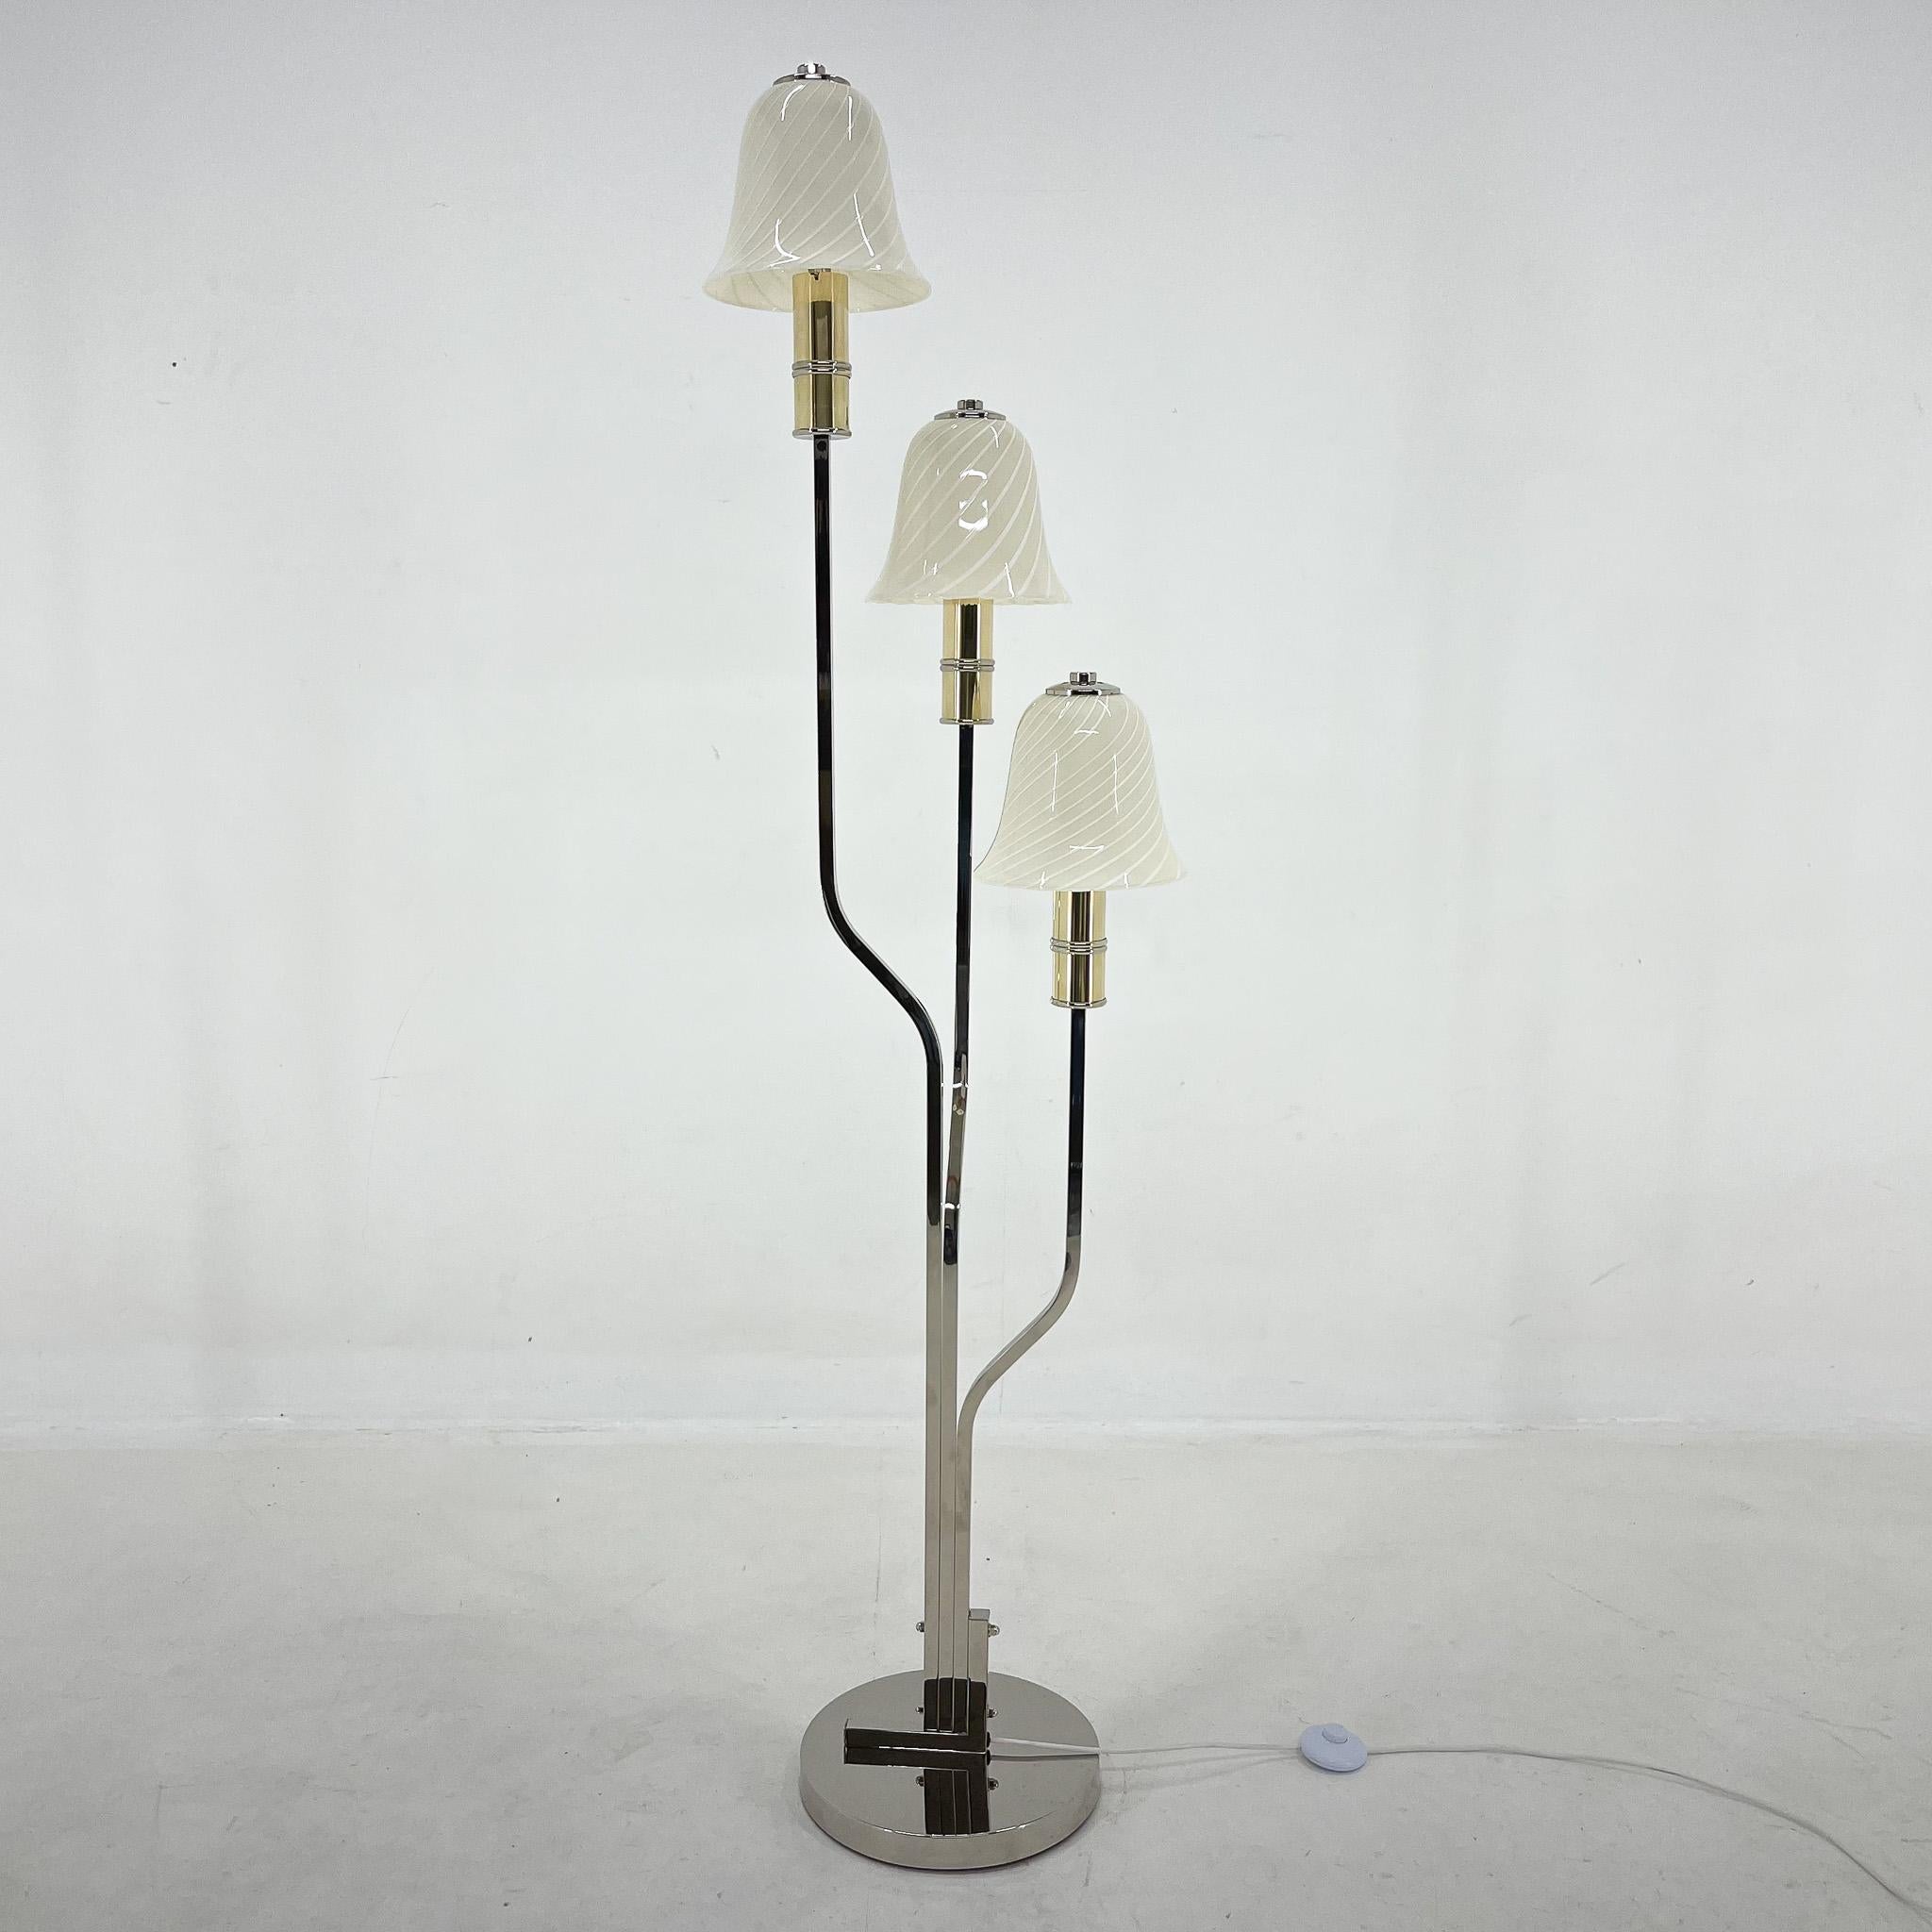 Un rare lampadaire chromé d'Italie, fabriqué dans les années 1970. Les abat-jour sont en verre de Murano original, fabriqué à la main, et la lampe était manifestement destinée à ressembler à des champignons magiques. Il projette une belle lumière et